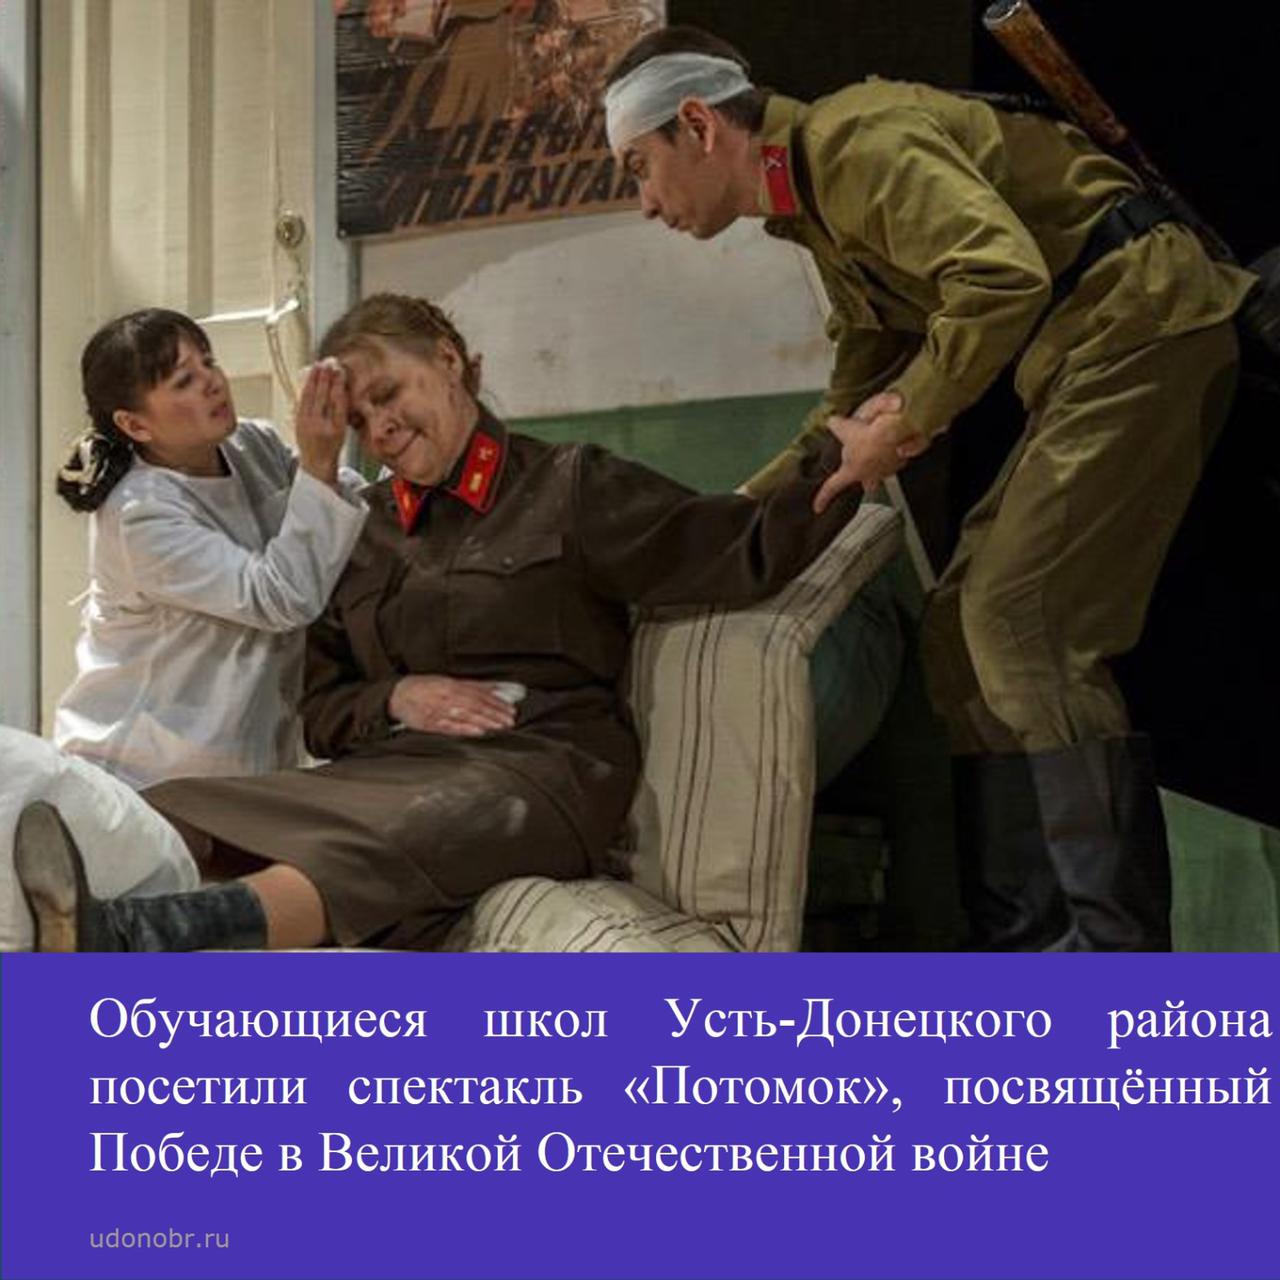 Обучающиеся школ Усть-Донецкого района посетили спектакль «Потомок», посвящённый Победе в Великой Отечественной войне